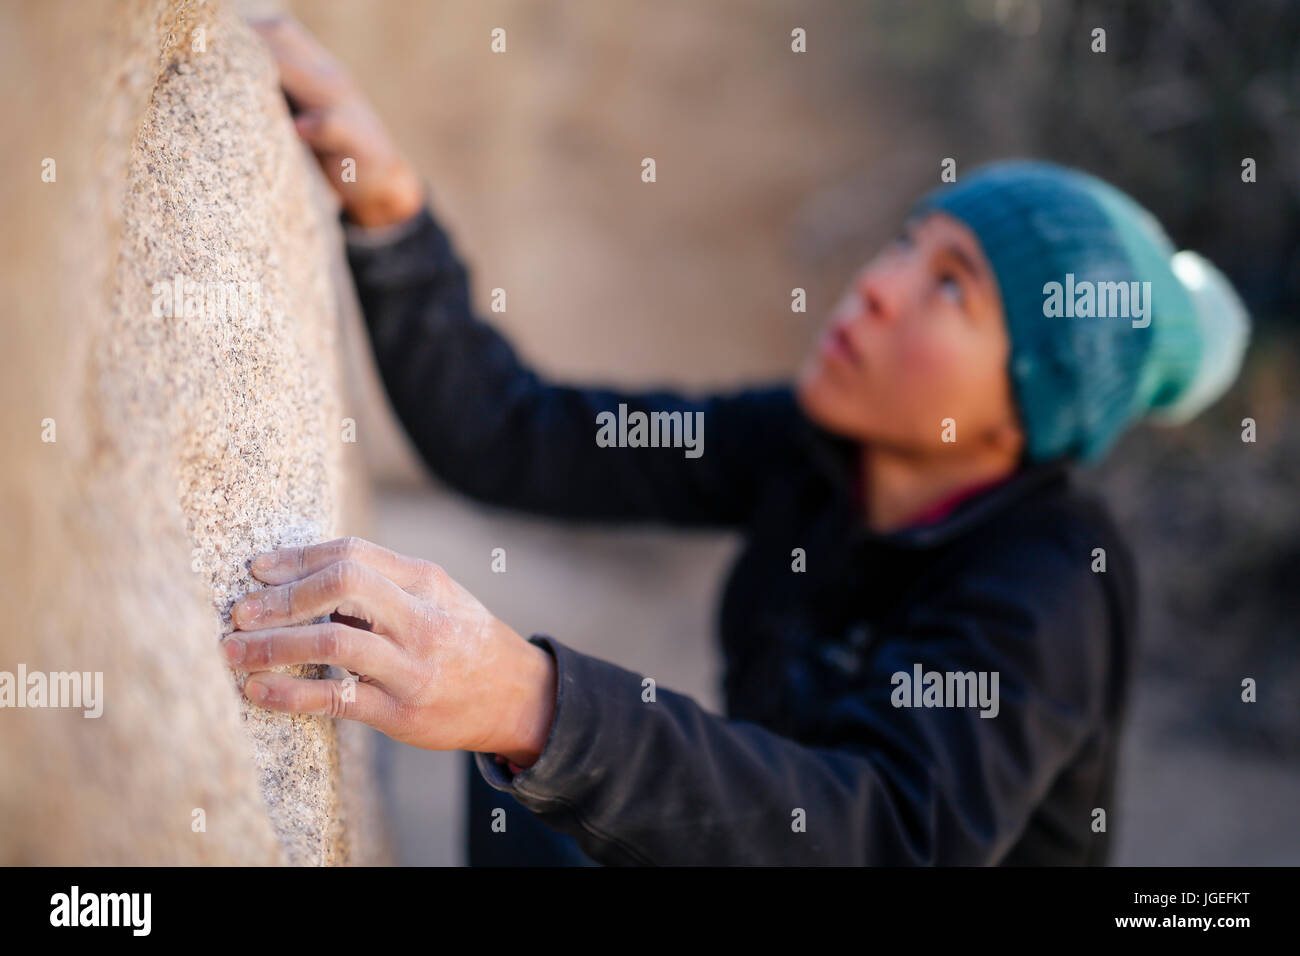 Giovani razza mista donna vestita di freddo di abbigliamento rock si arrampica nel deserto Foto Stock